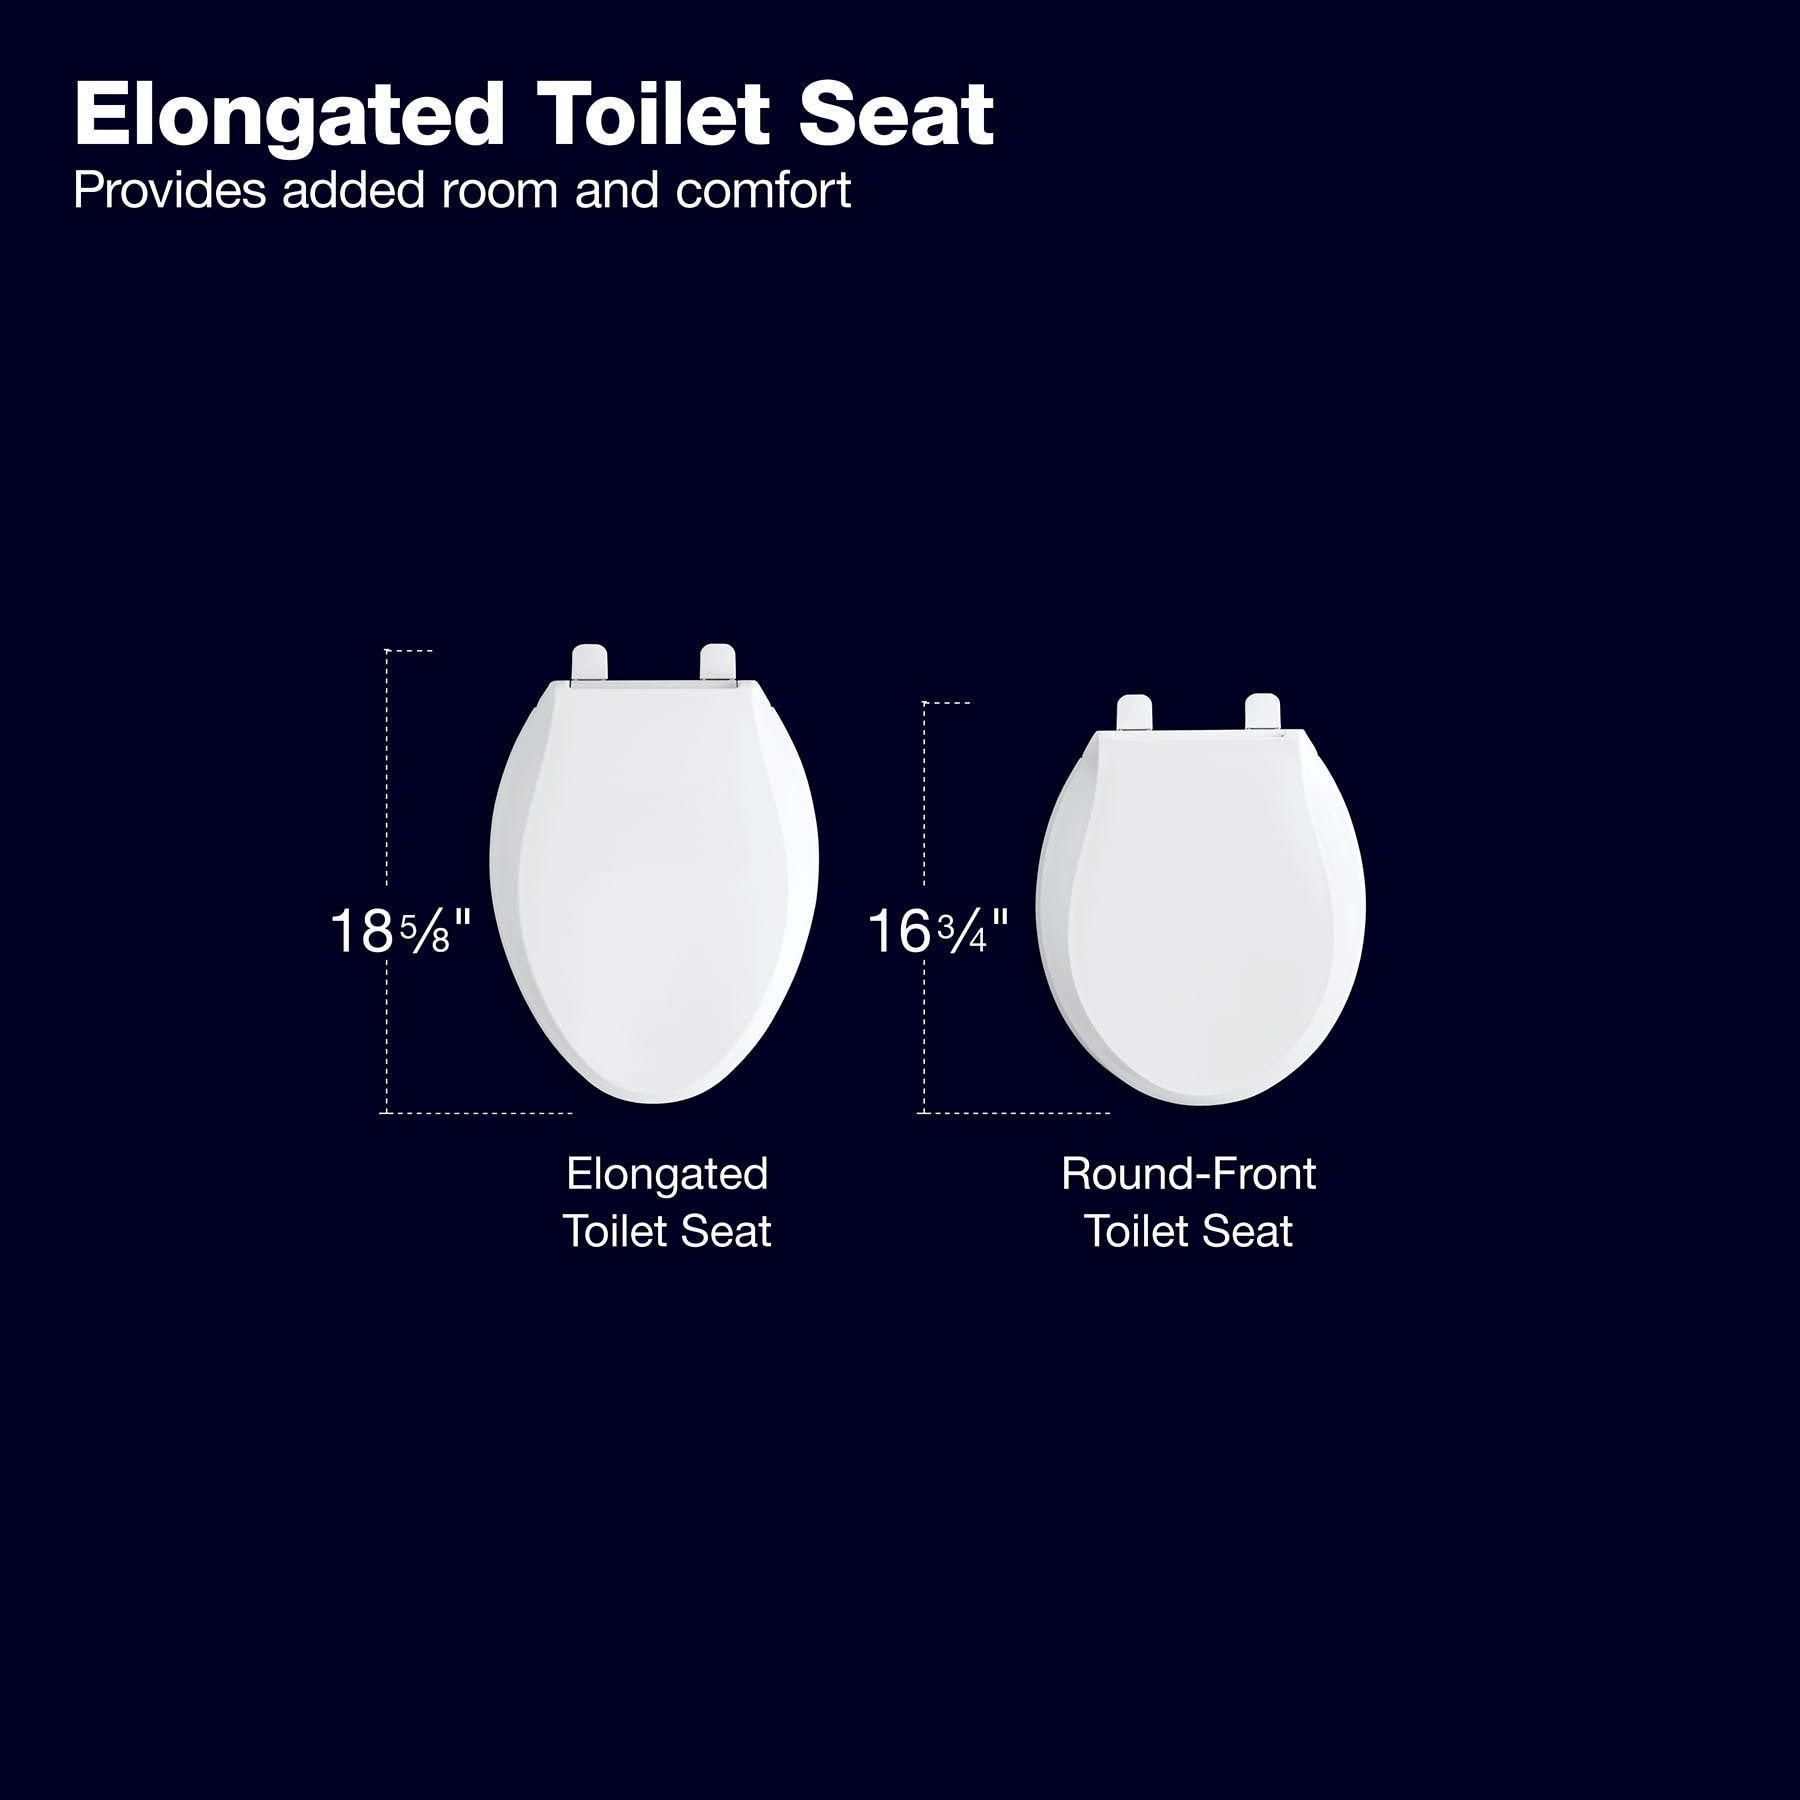 Galactika LED-lighted toilet seat  Cool toilets, Toilet design, Toilet seat